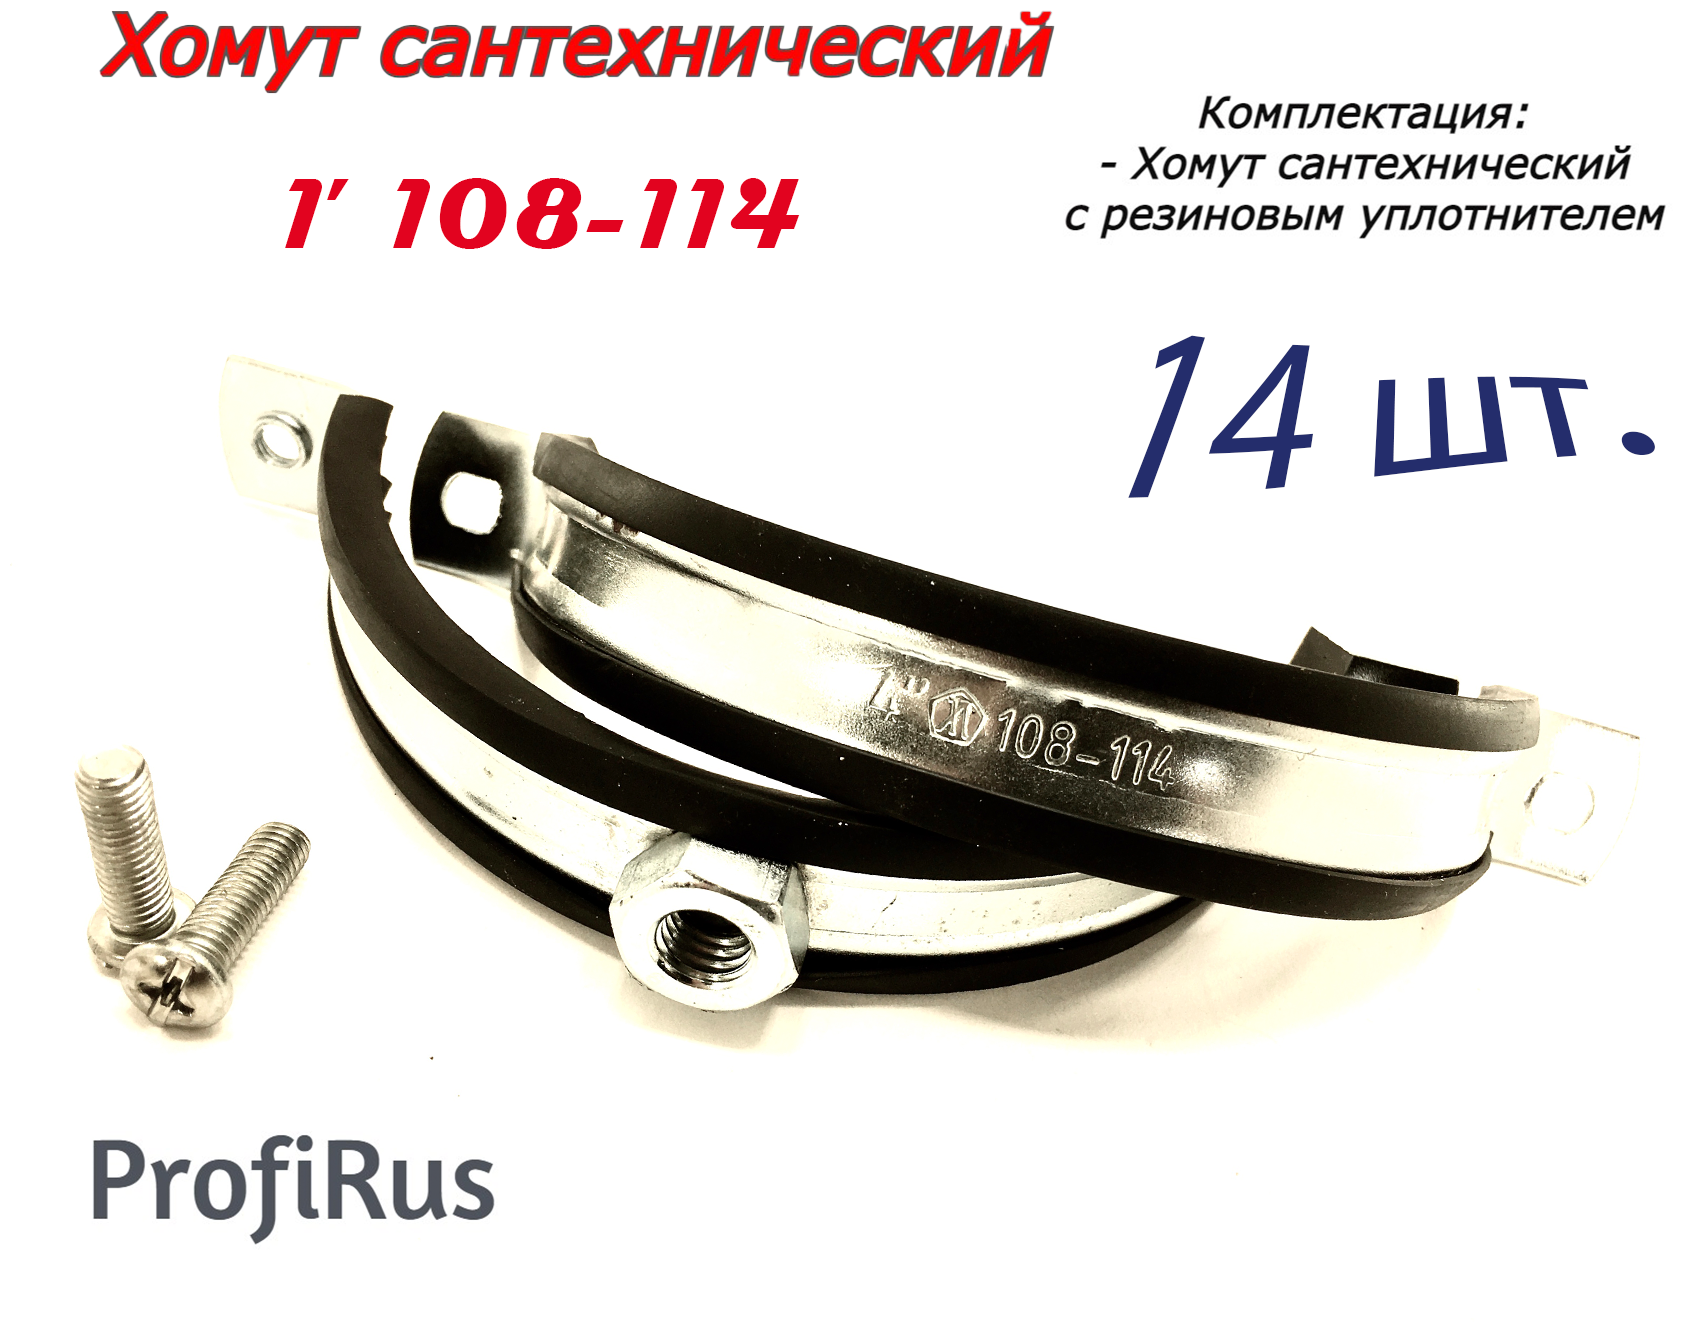 Хомут сантехнический D4" 108-114 (14 шт) для труб с резиновым уплотнением - фотография № 1